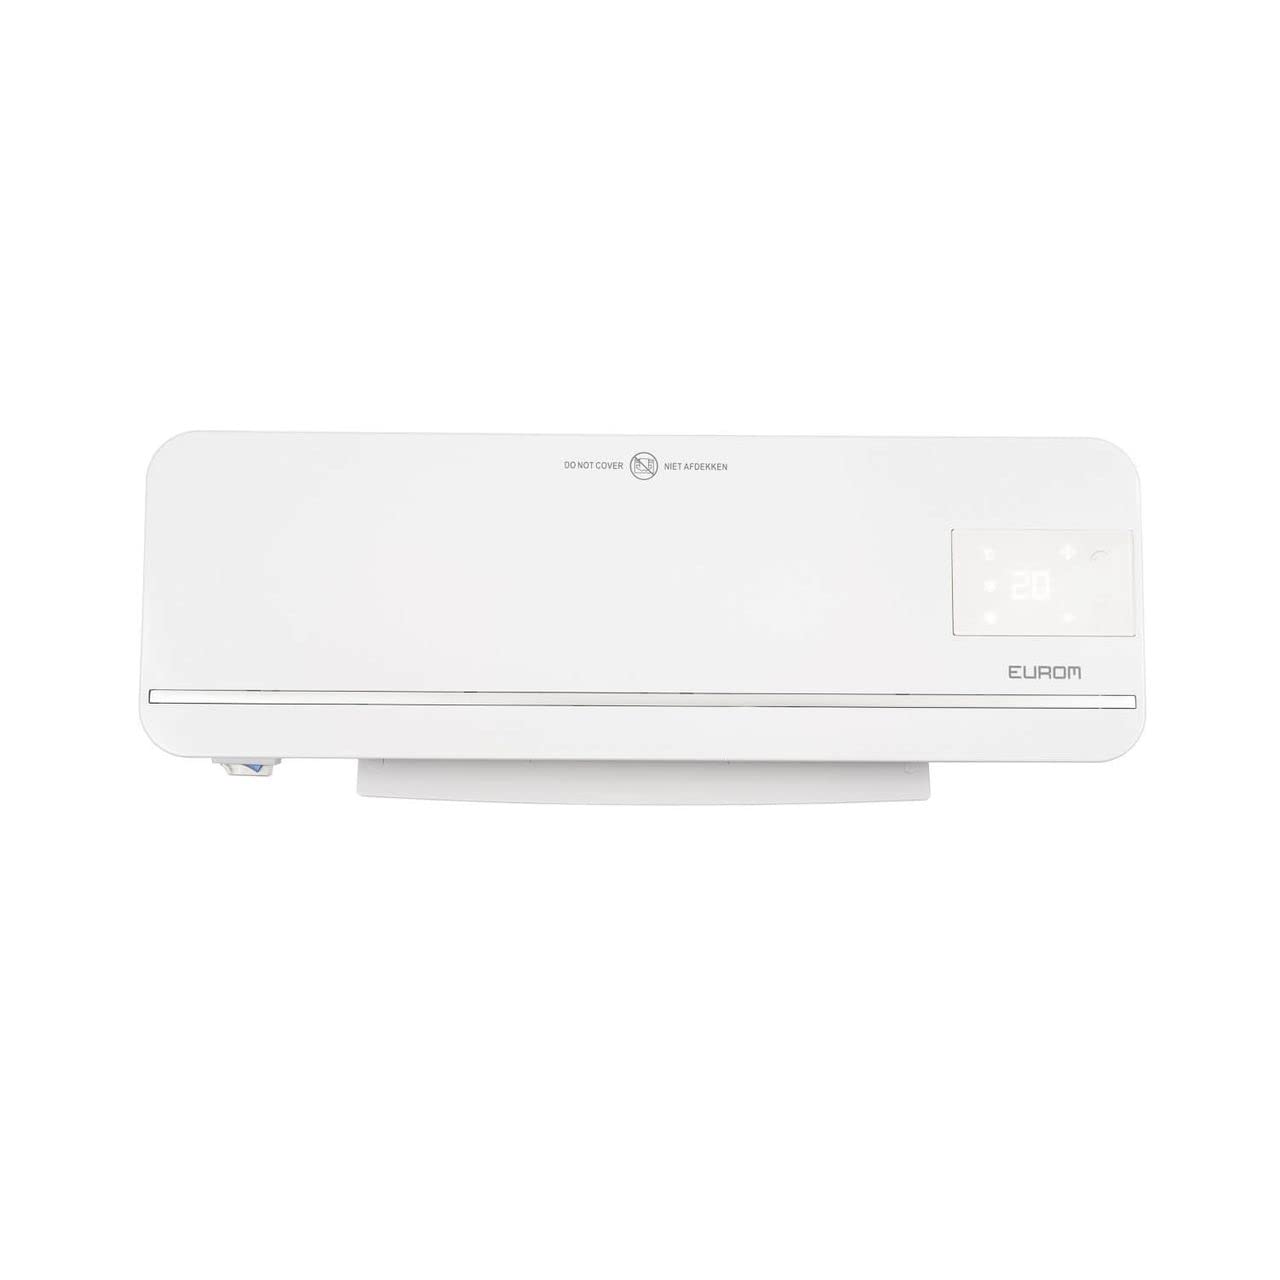 Eurom Sani-Wall-Heat 2000 WiFi Badezimmerheizung, 2000W, Thermostat, Timer, Überhitzungsschutz (343007)